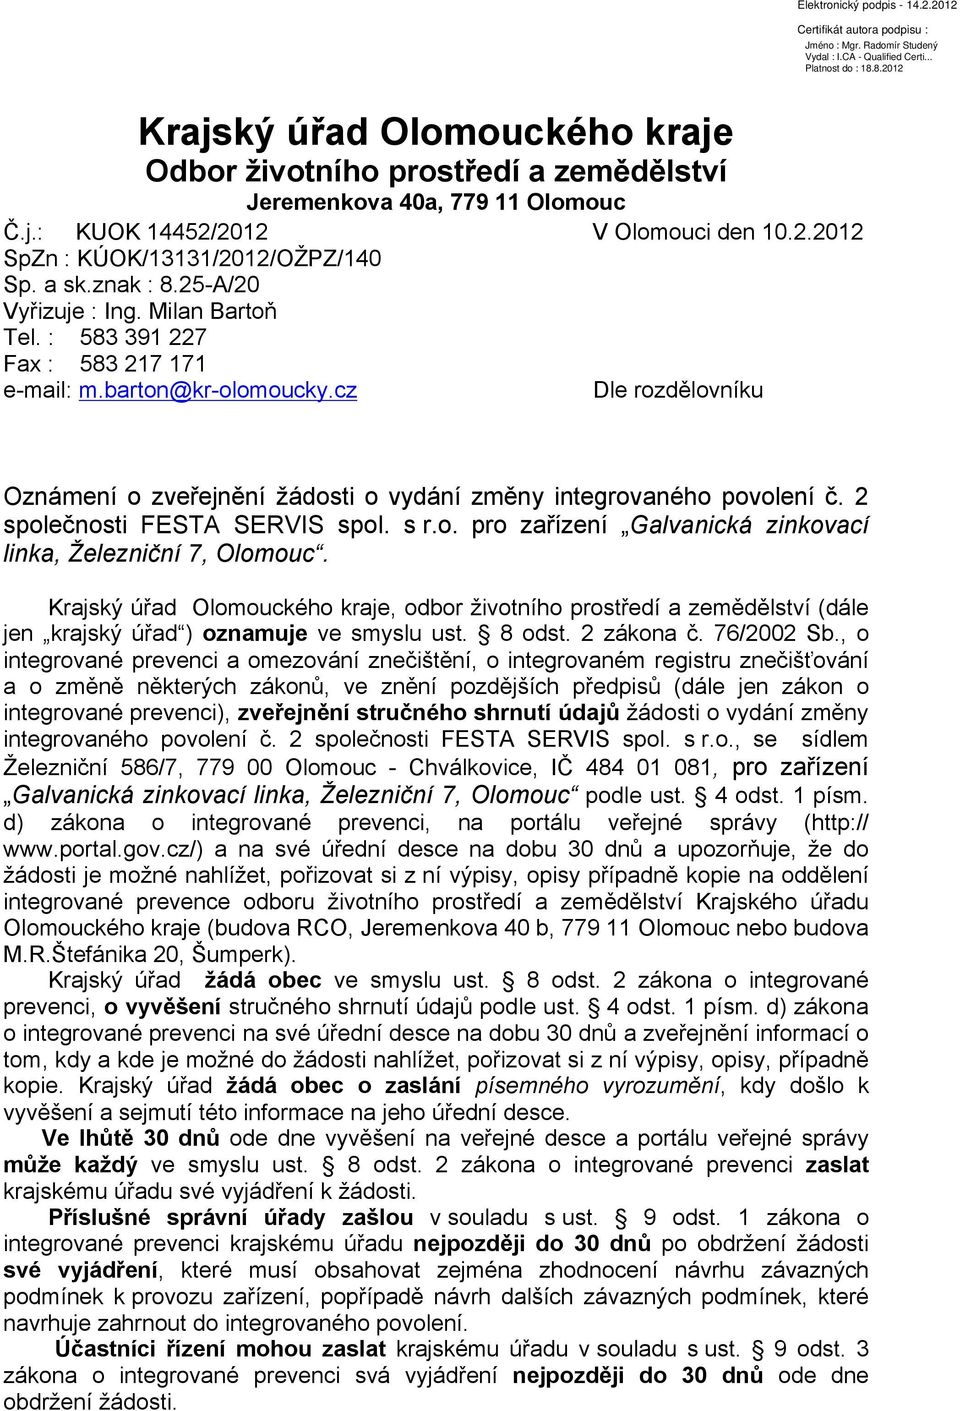 2 společnosti FESTA SERVIS spol. s r.o. pro zařízení Galvanická zinkovací linka, Železniční 7, Olomouc.